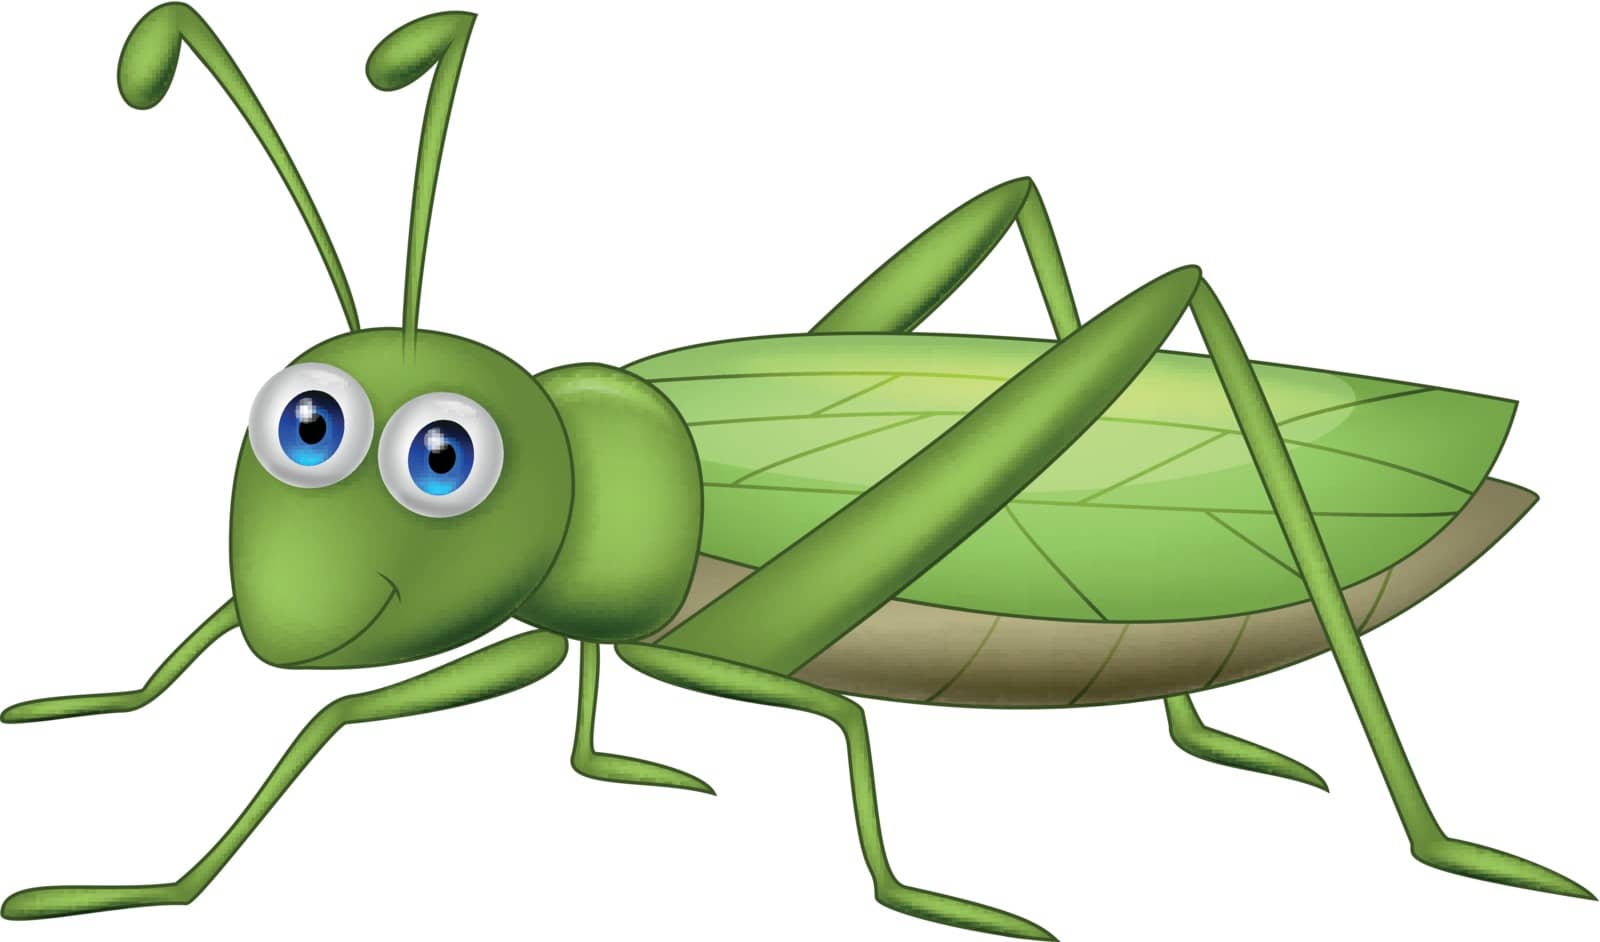 Vector illustration of Cute grasshopper cartoon